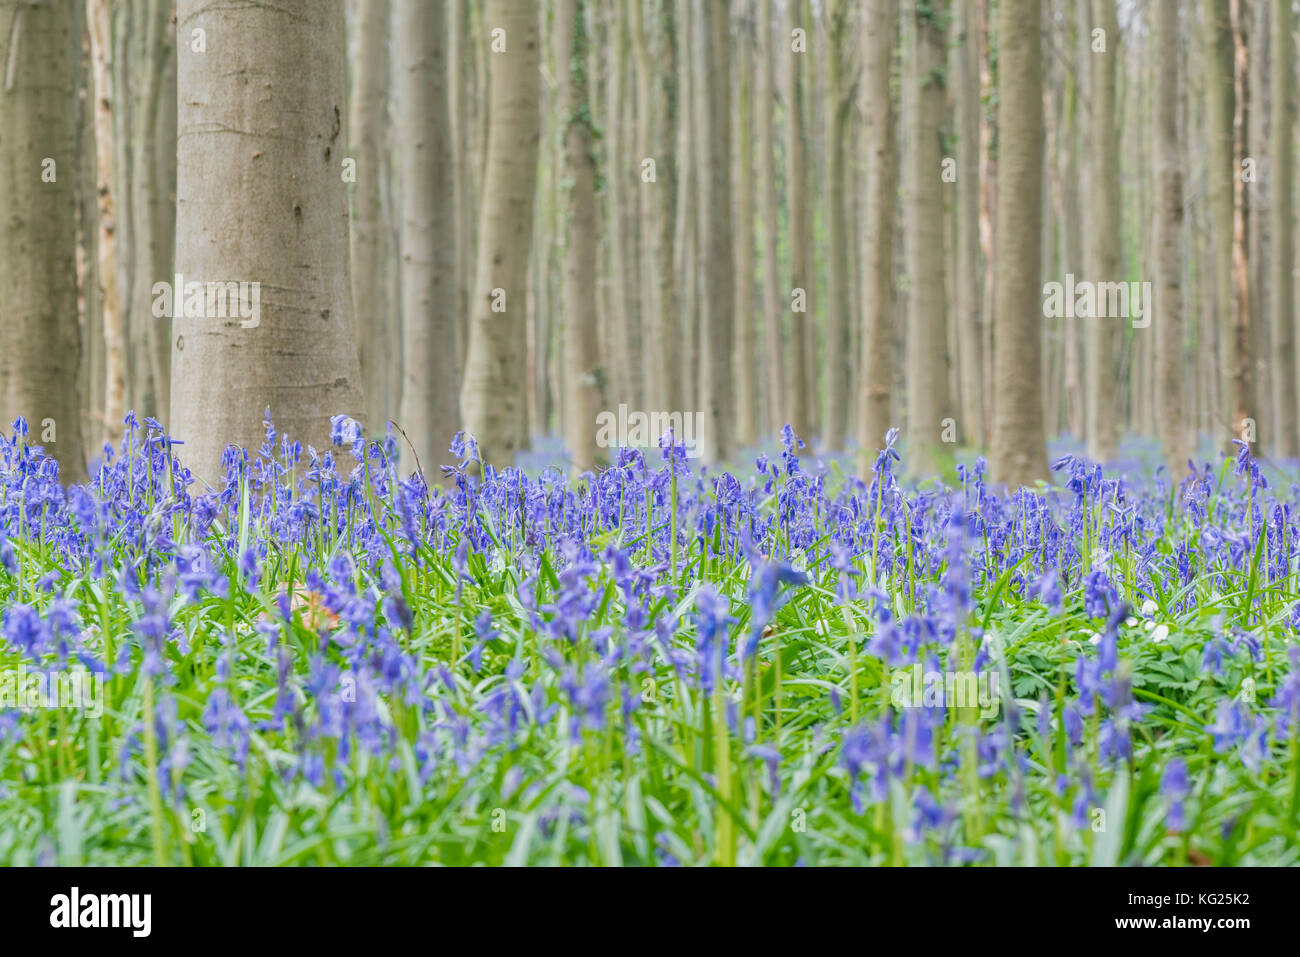 Beechwood with bluebell flowers on the ground, Halle, Flemish Brabant province, Flemish region, Belgium, Europe Stock Photo